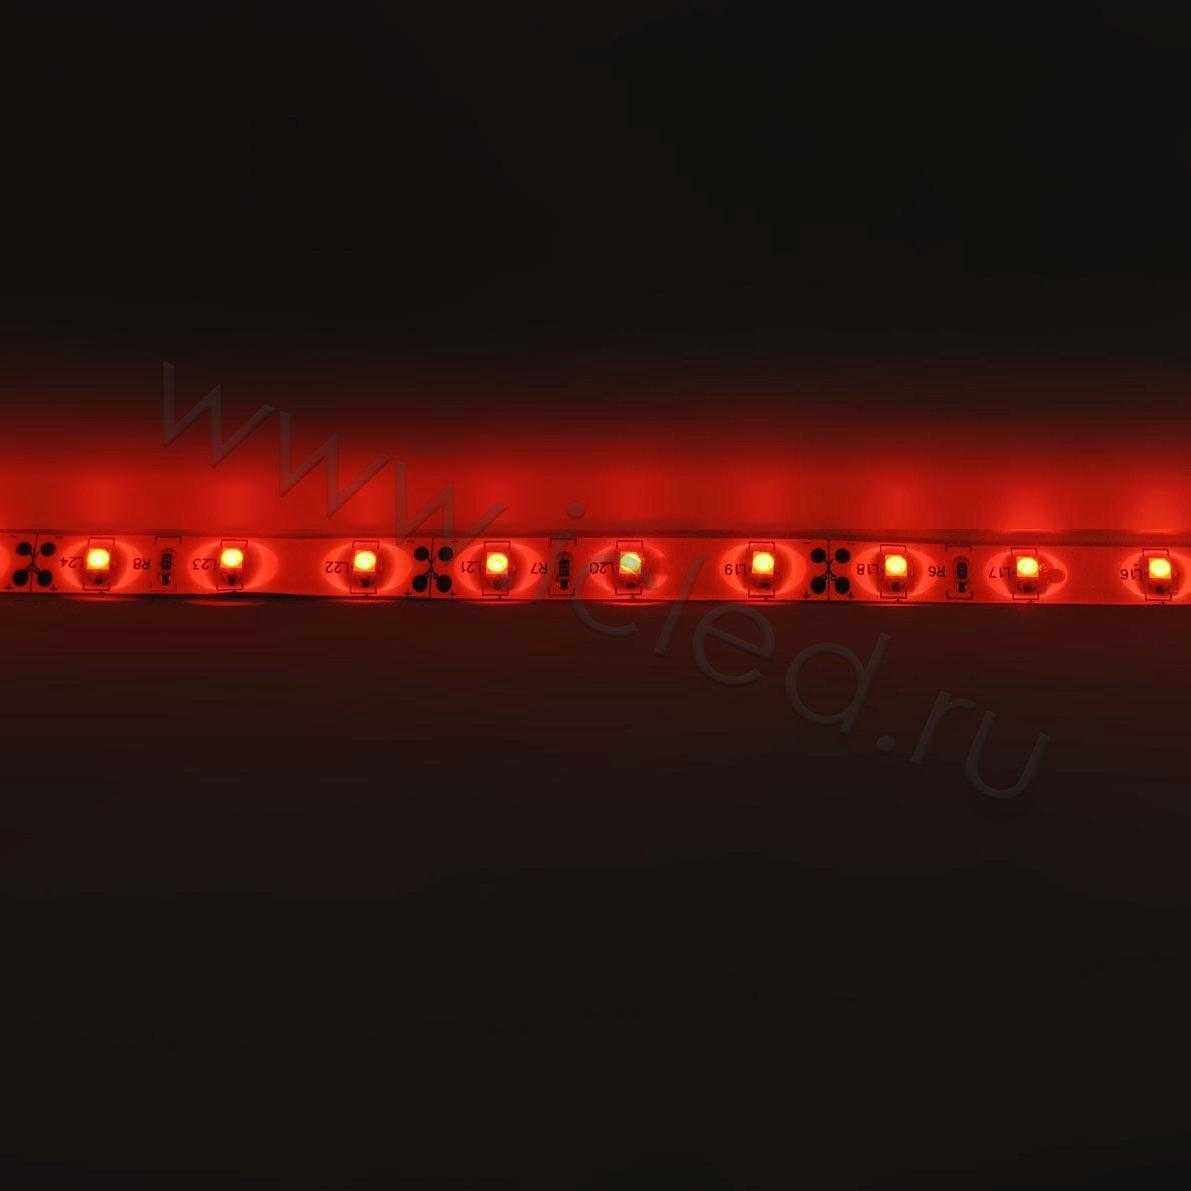 Влагозащищенные светодиодные ленты Светодиодная лента Standart PRO class, 3528, 60 led/m, Red, 12V, IP65 Icled